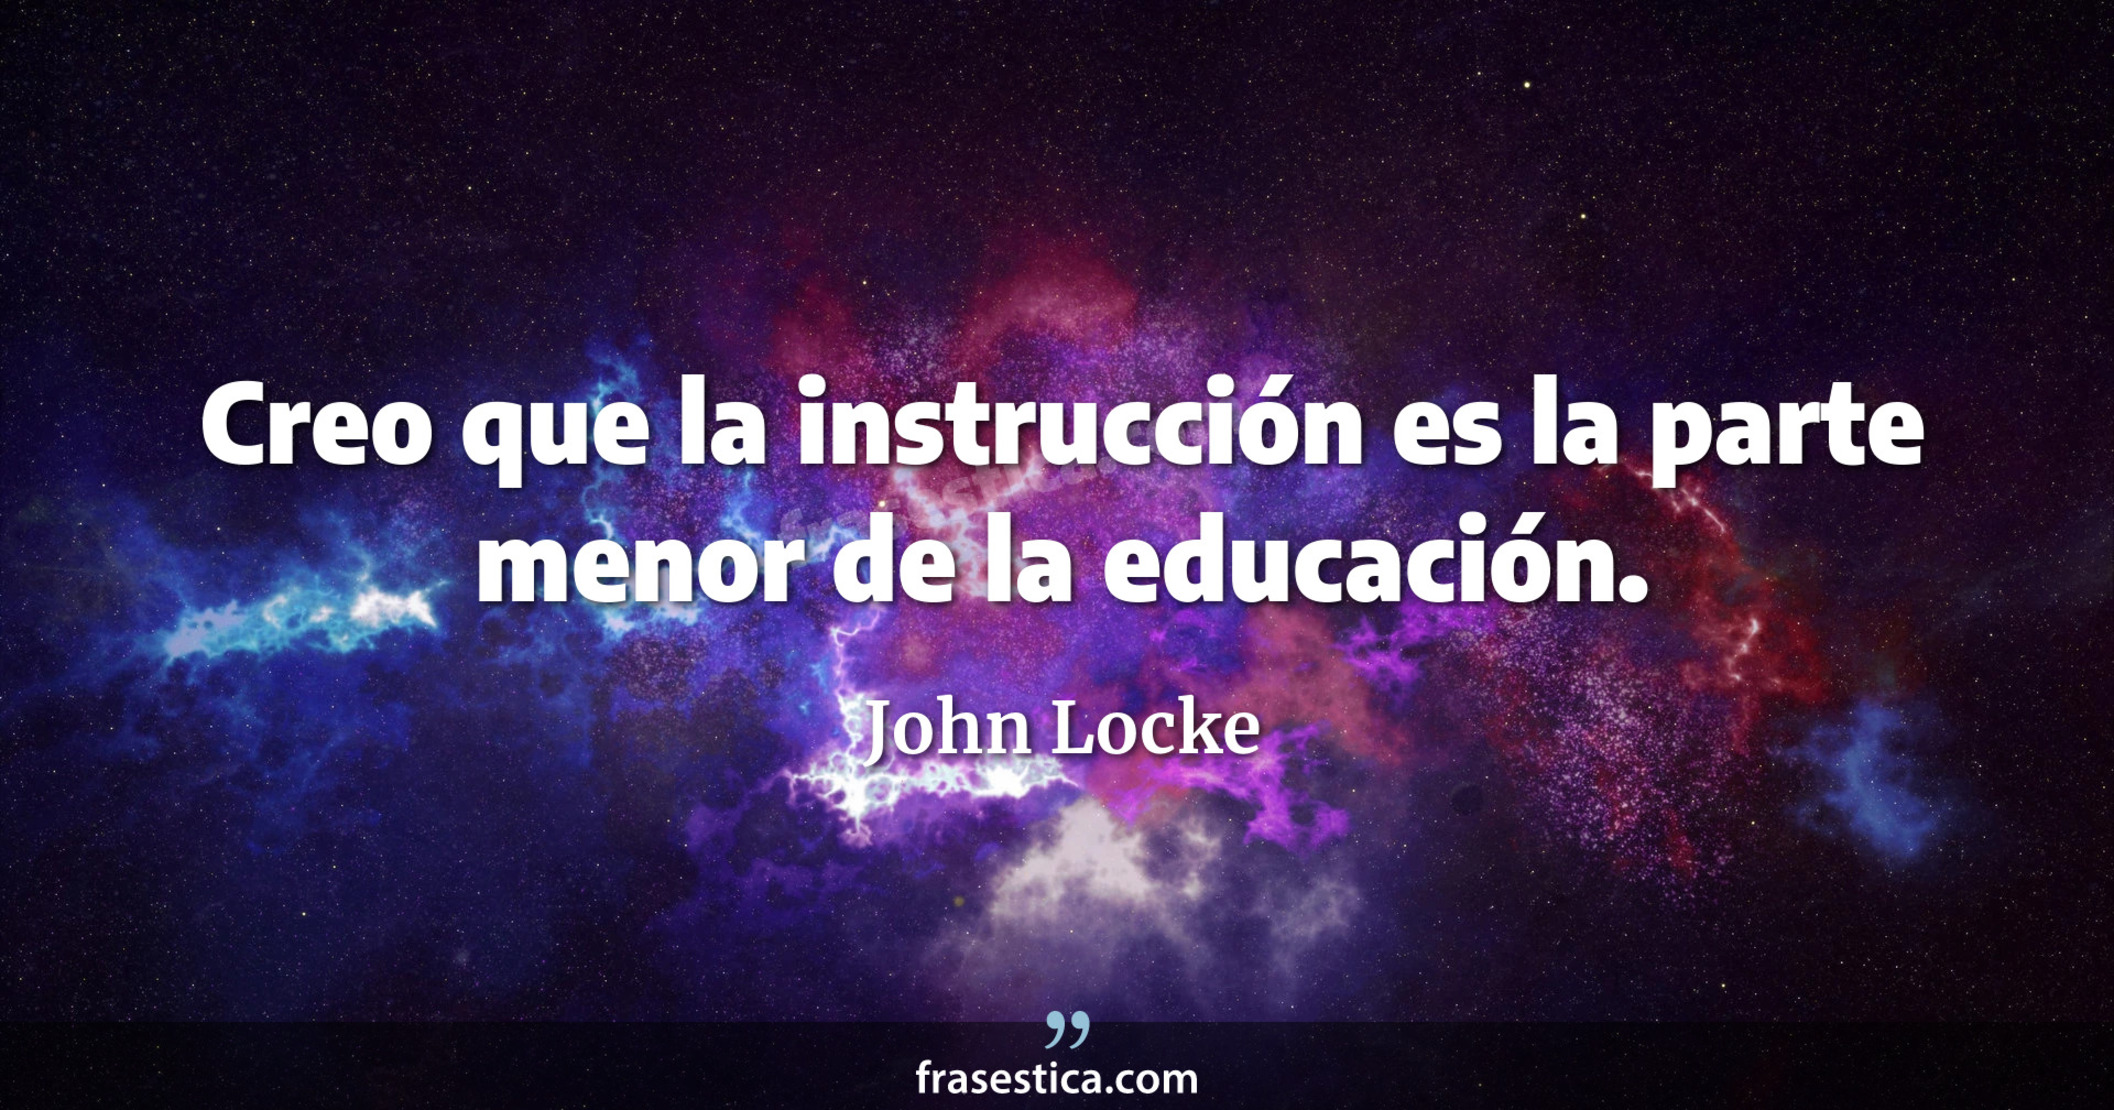 Creo que la instrucción es la parte menor de la educación. - John Locke